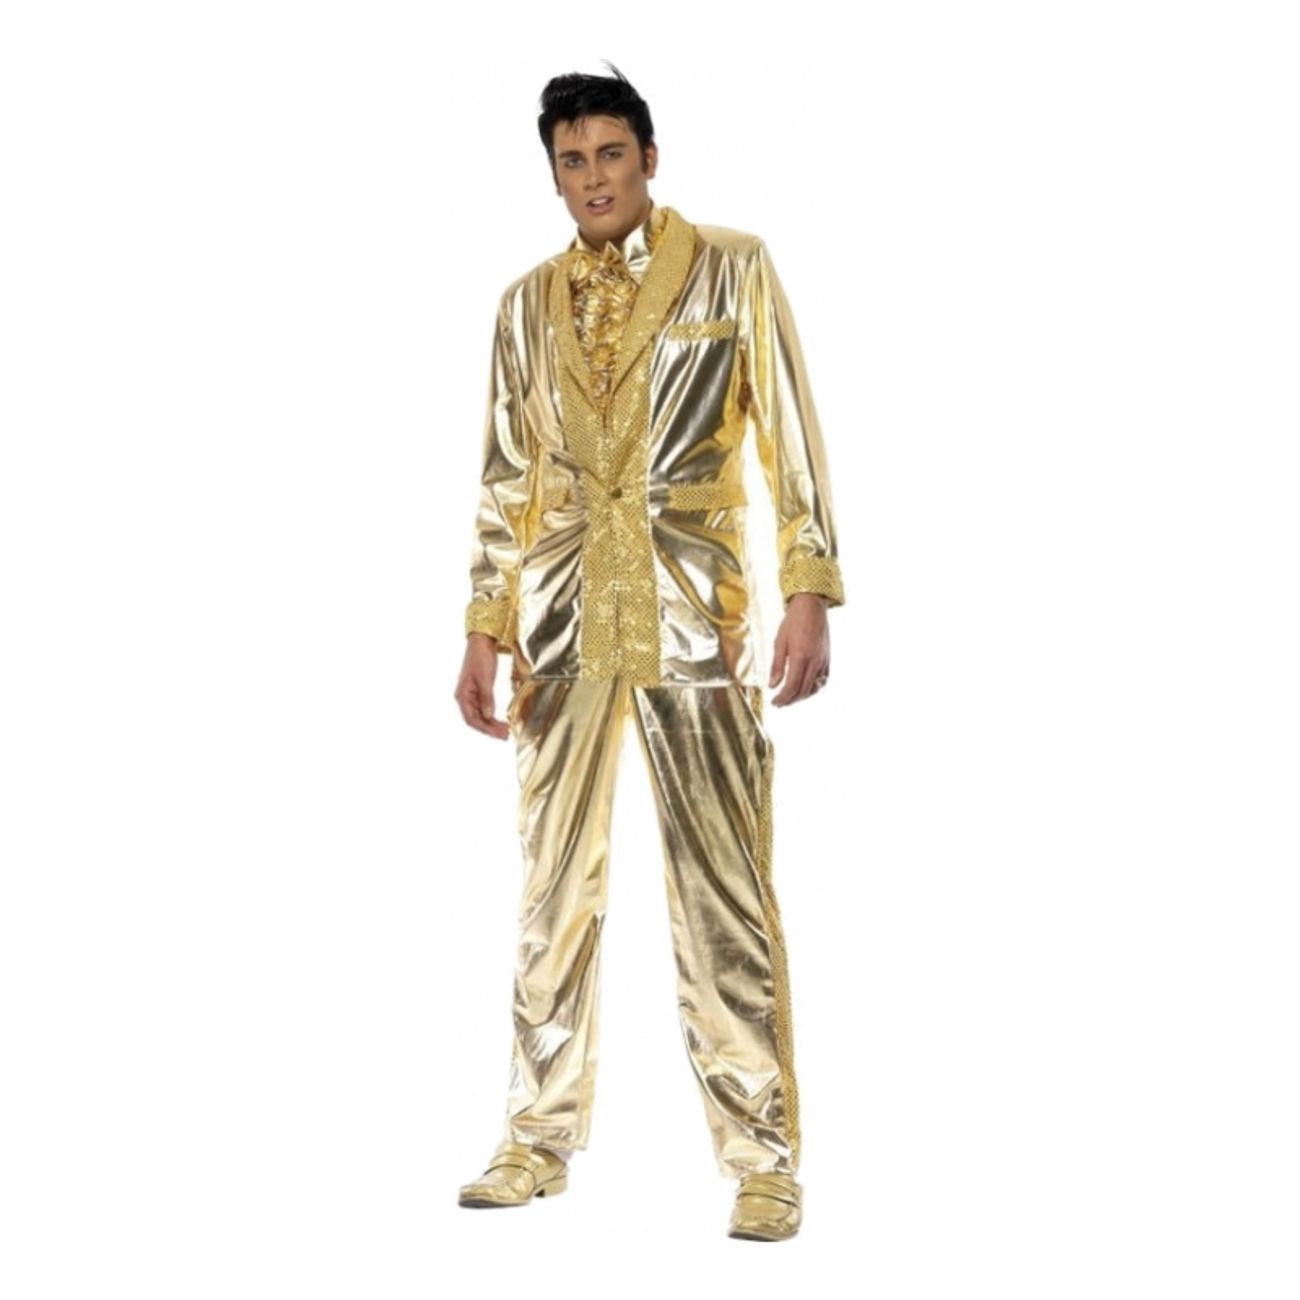 elvis-costume-gold-medium-1